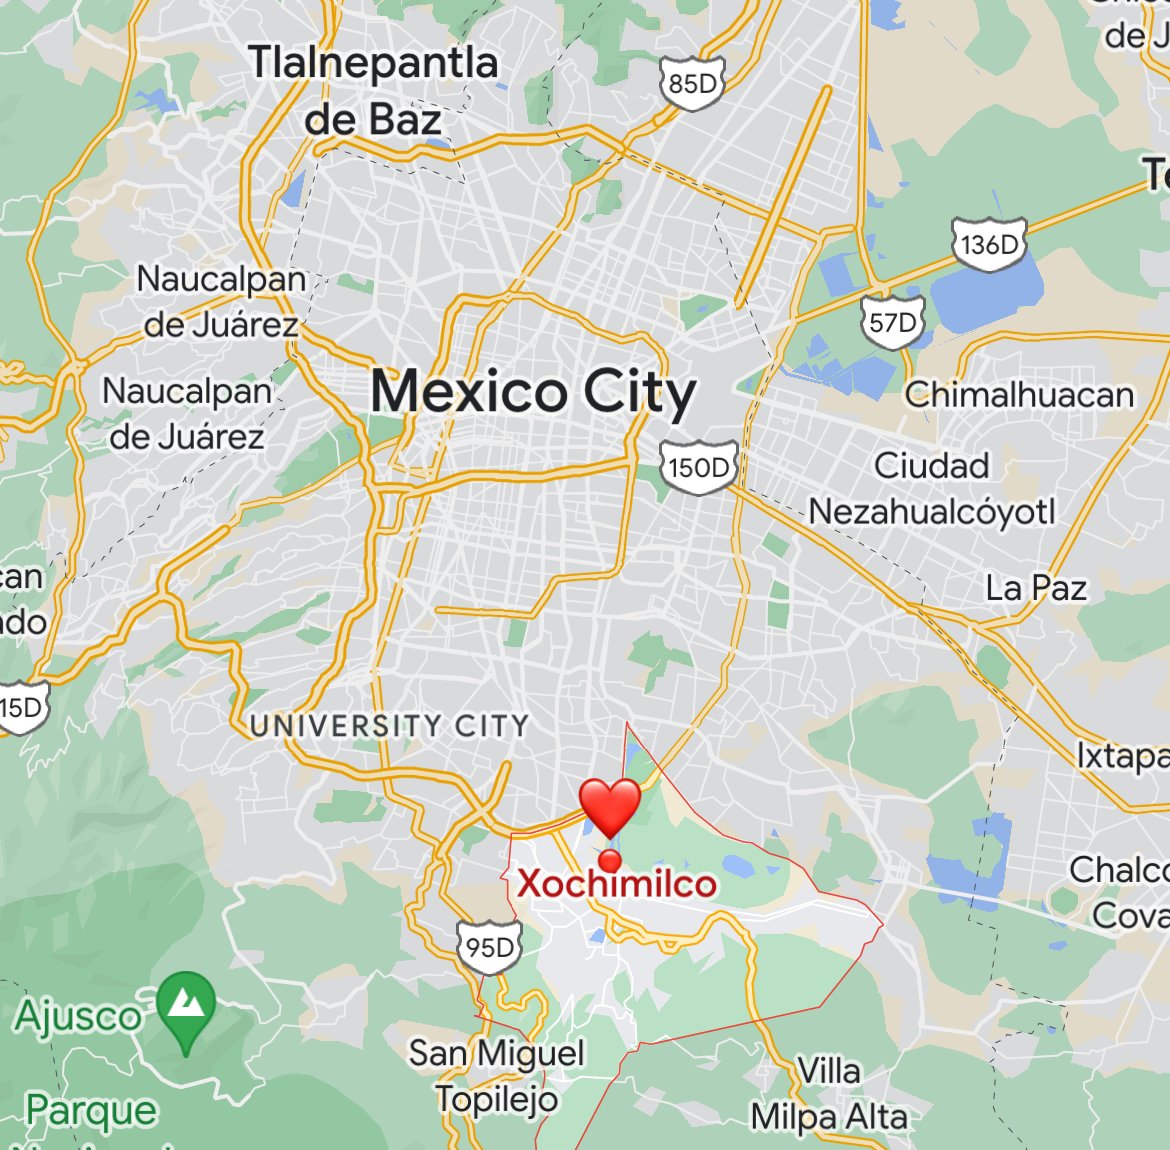 where is xochimilco